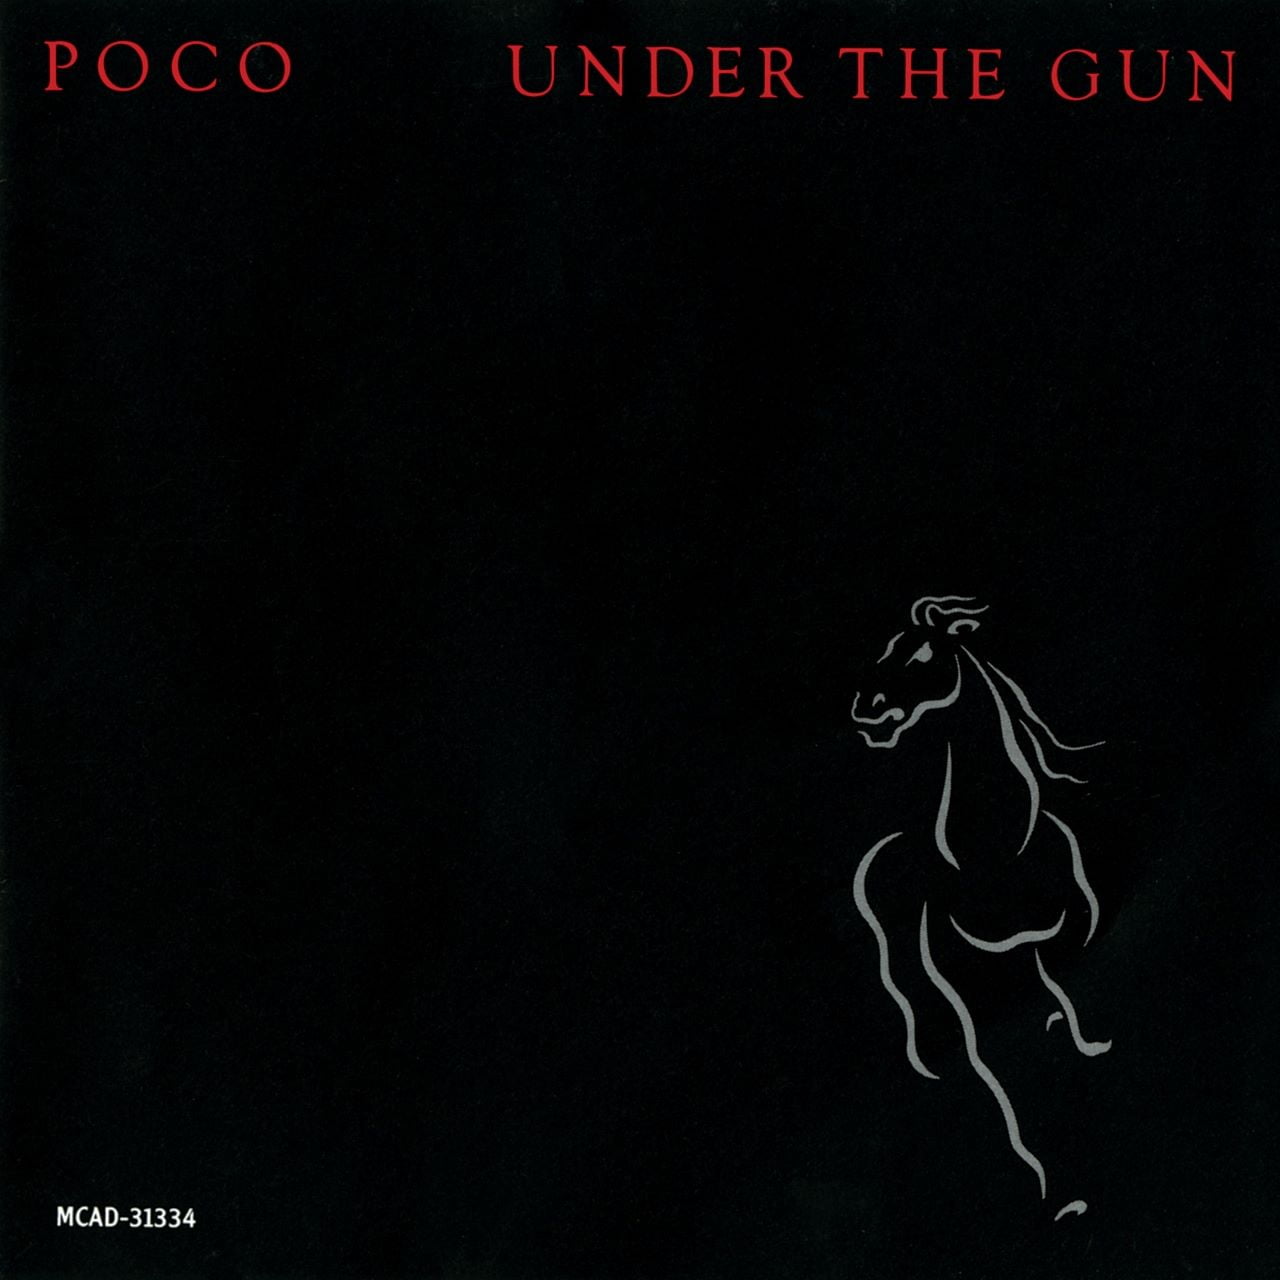 Poco – Under The Gun cover album